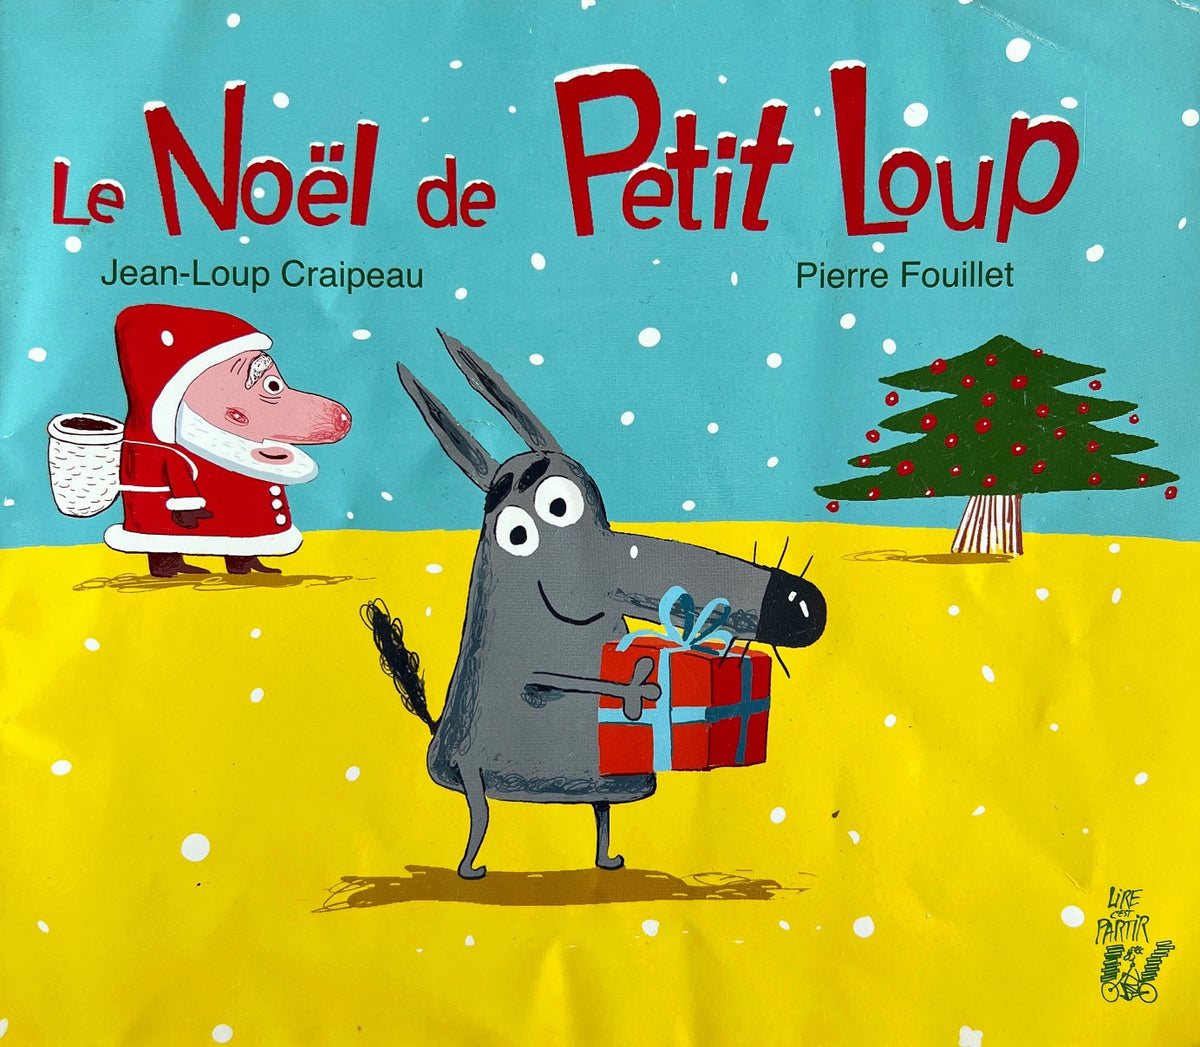 Petit Loup : Le Noël de Petit Loup (TÉLÉCHARGEMENT) – Lire c'est partir